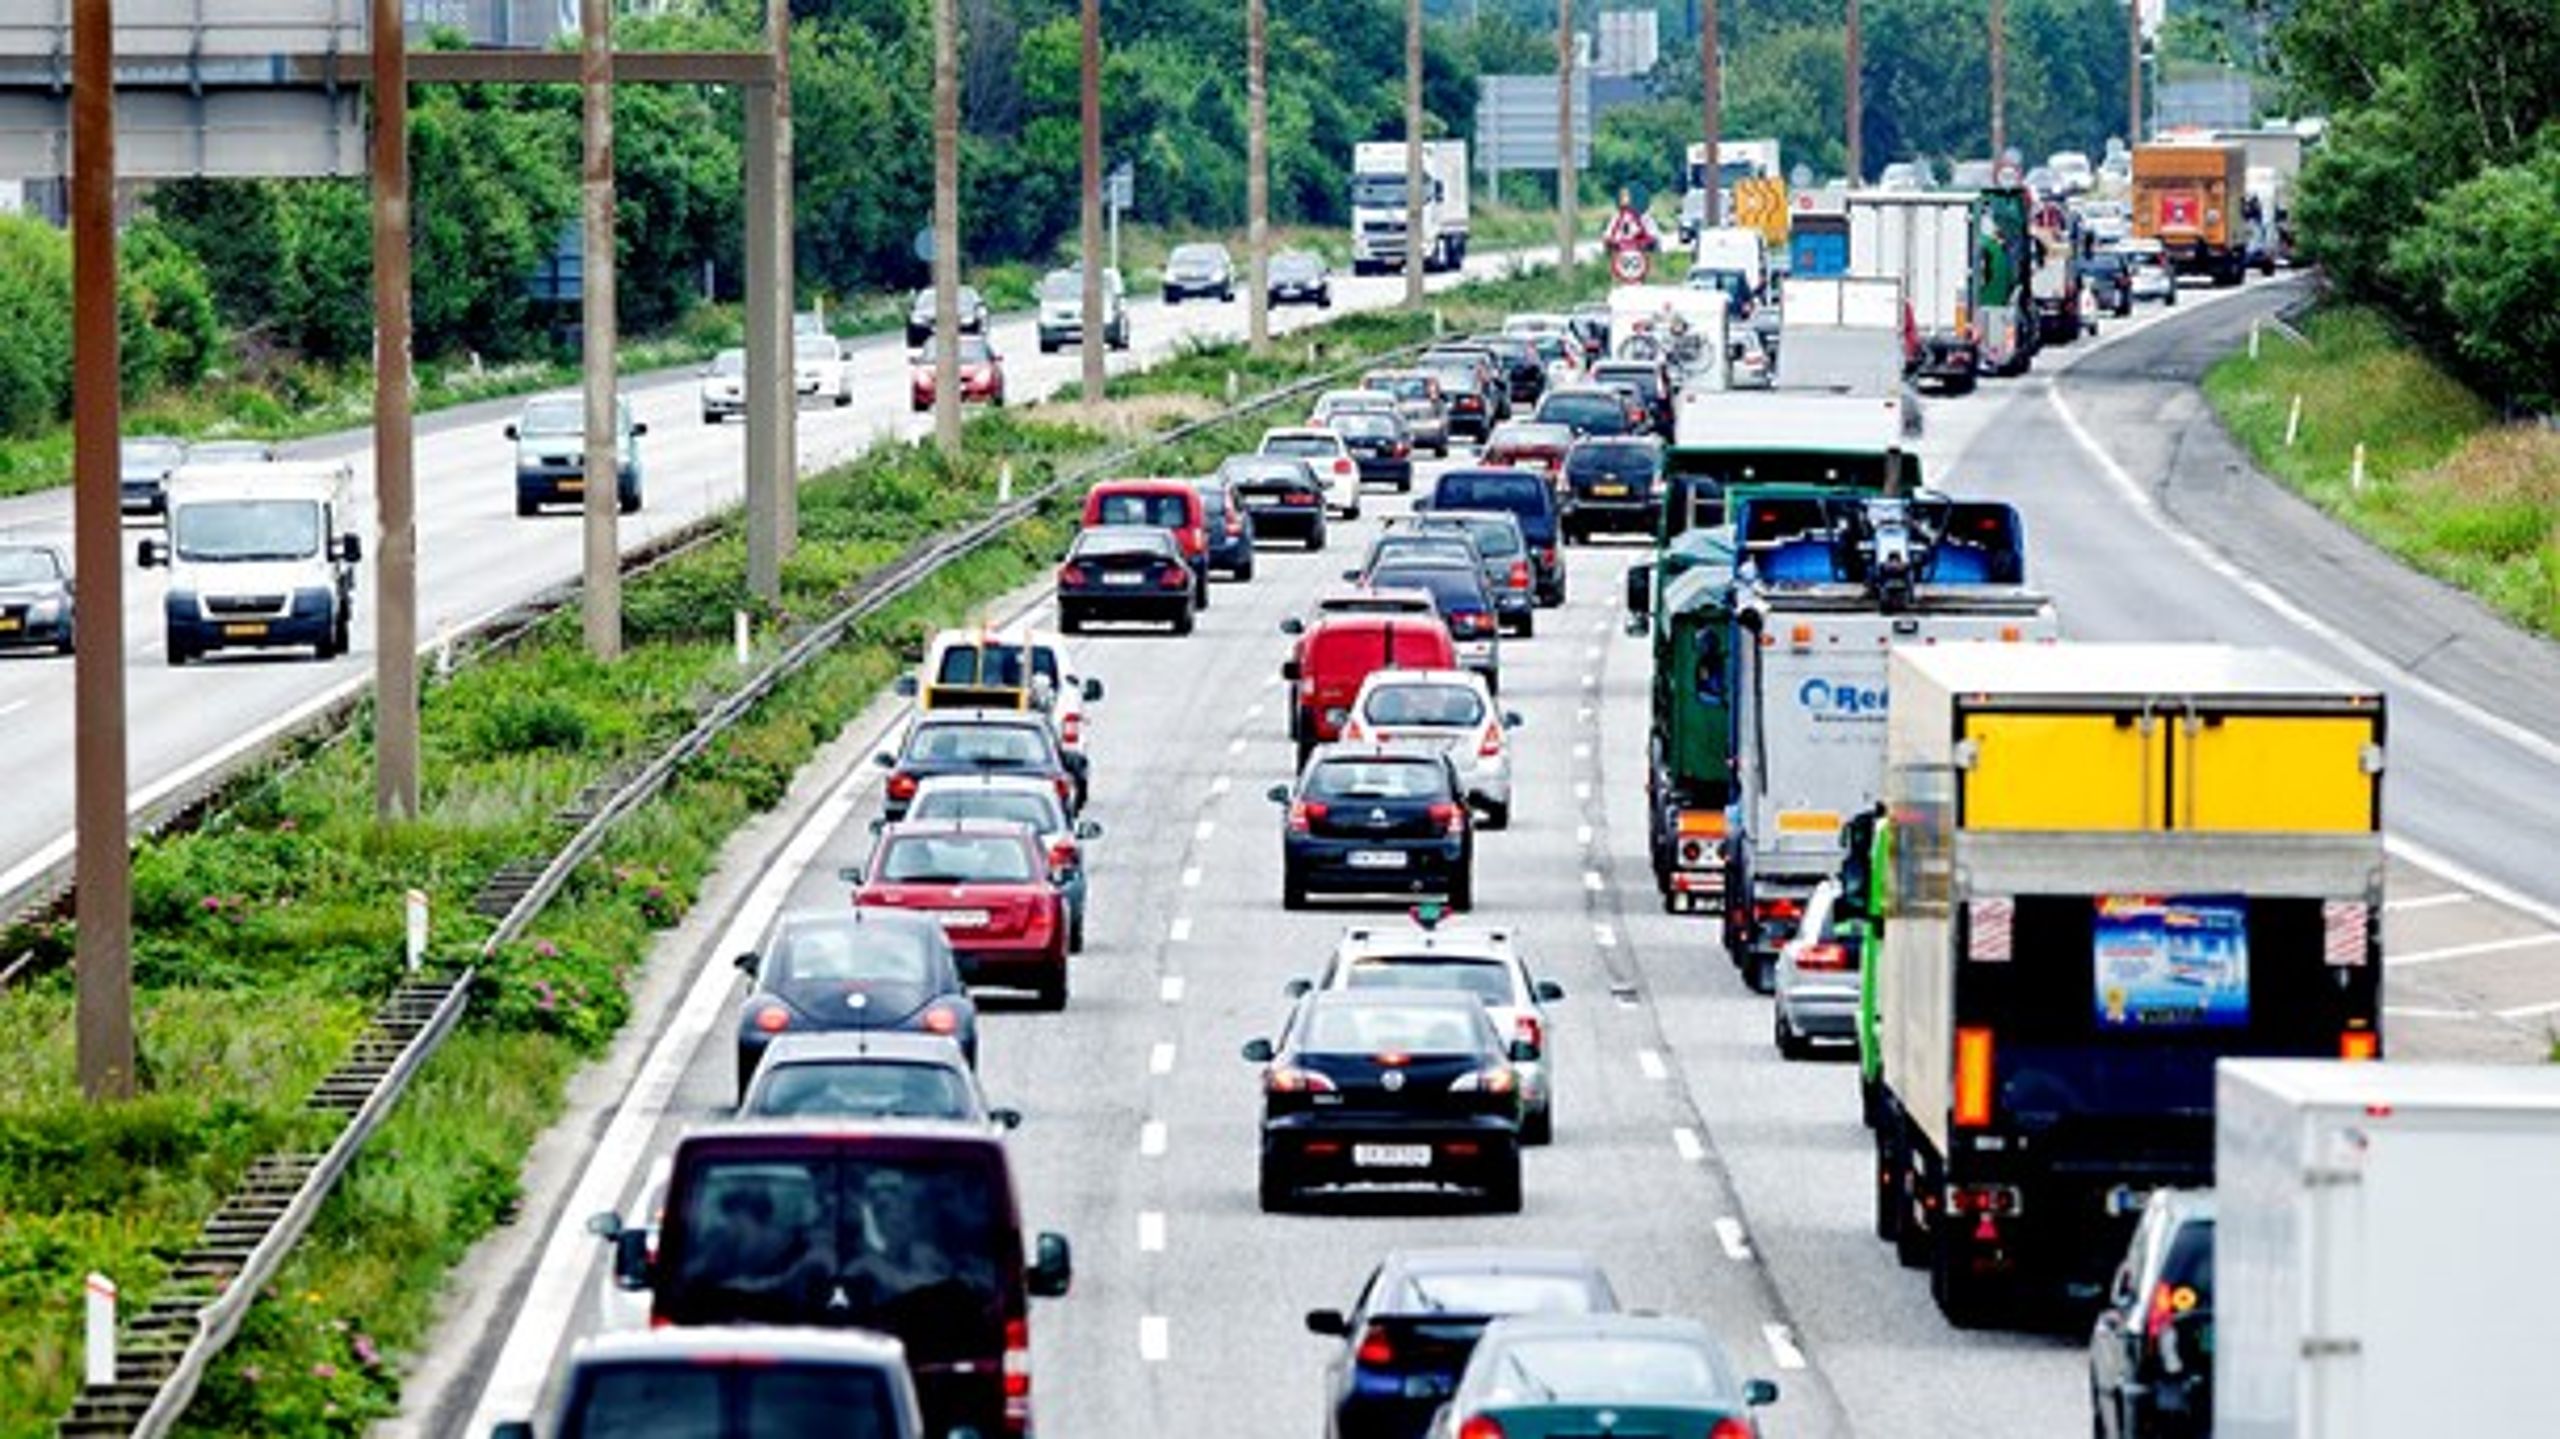 Ingeniører mener, at teknologien er parat til at udvikle gps-styret kørselsafgift for personbiler i Danmark.